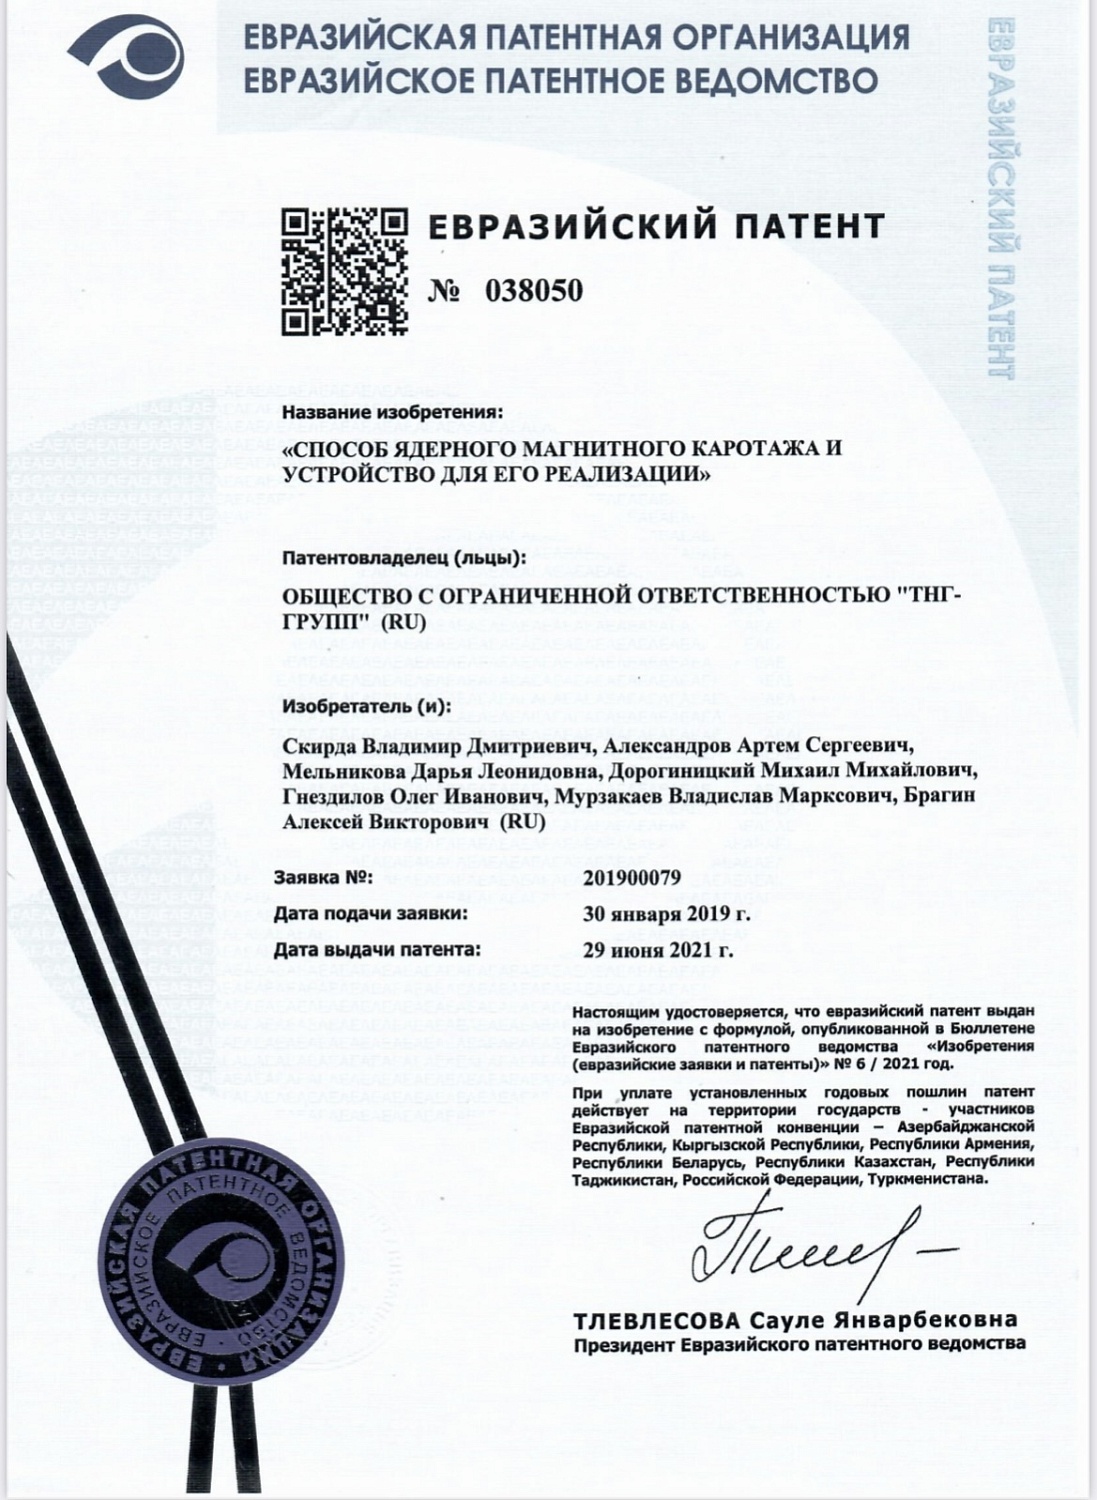 Дивизион «ТНГ-Групп» получил патент Евразийского патентного общества